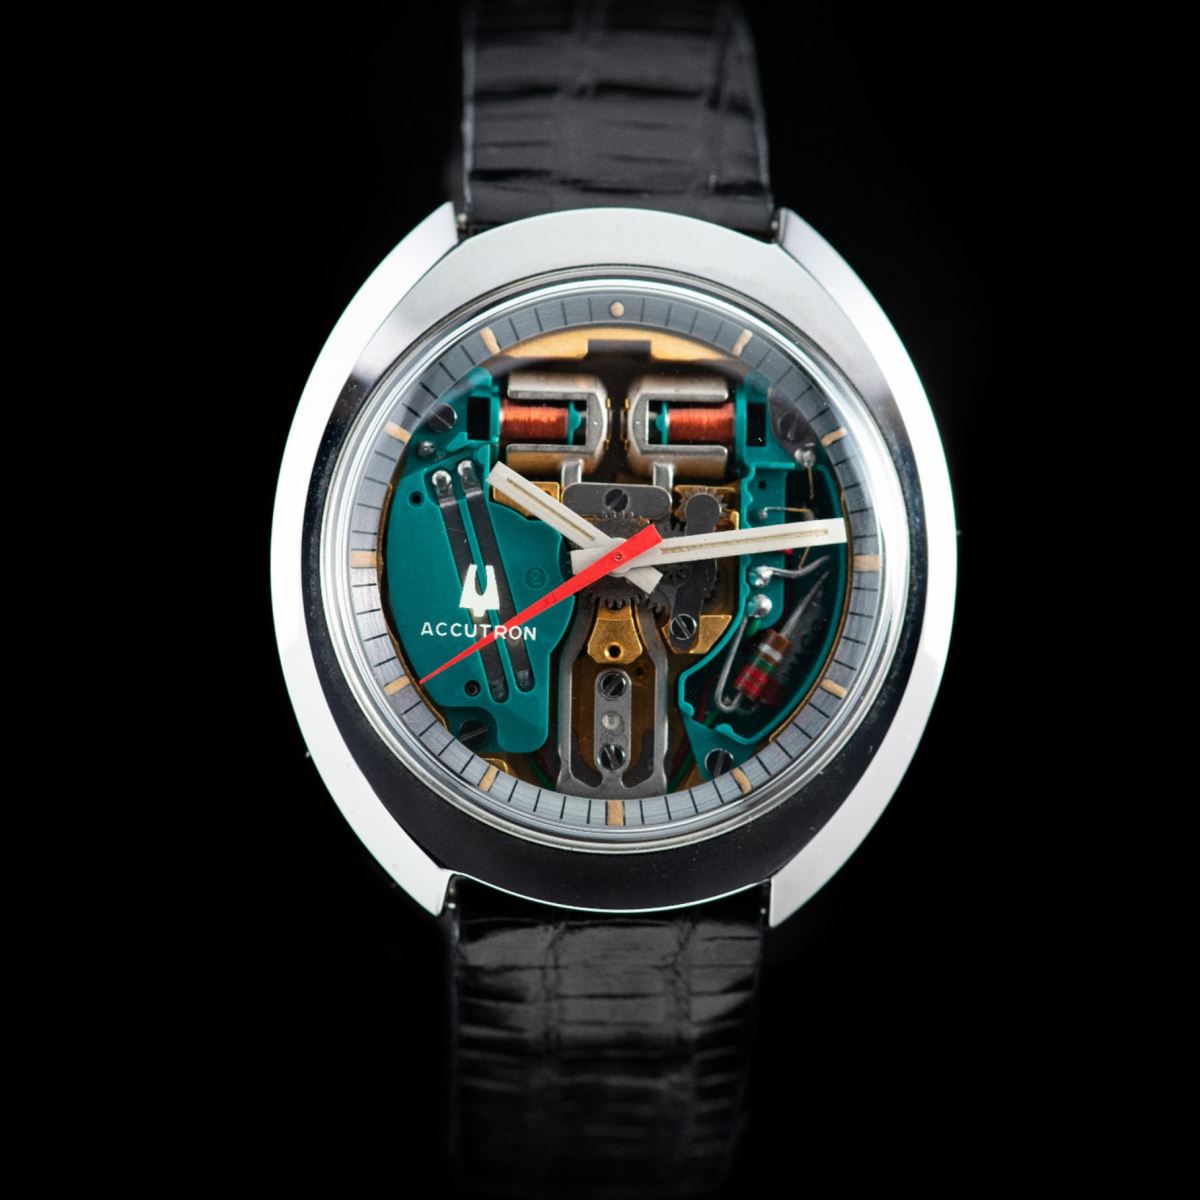 đồng hồ Accutron Spaceview chính xác nhất thế giới năm 1974